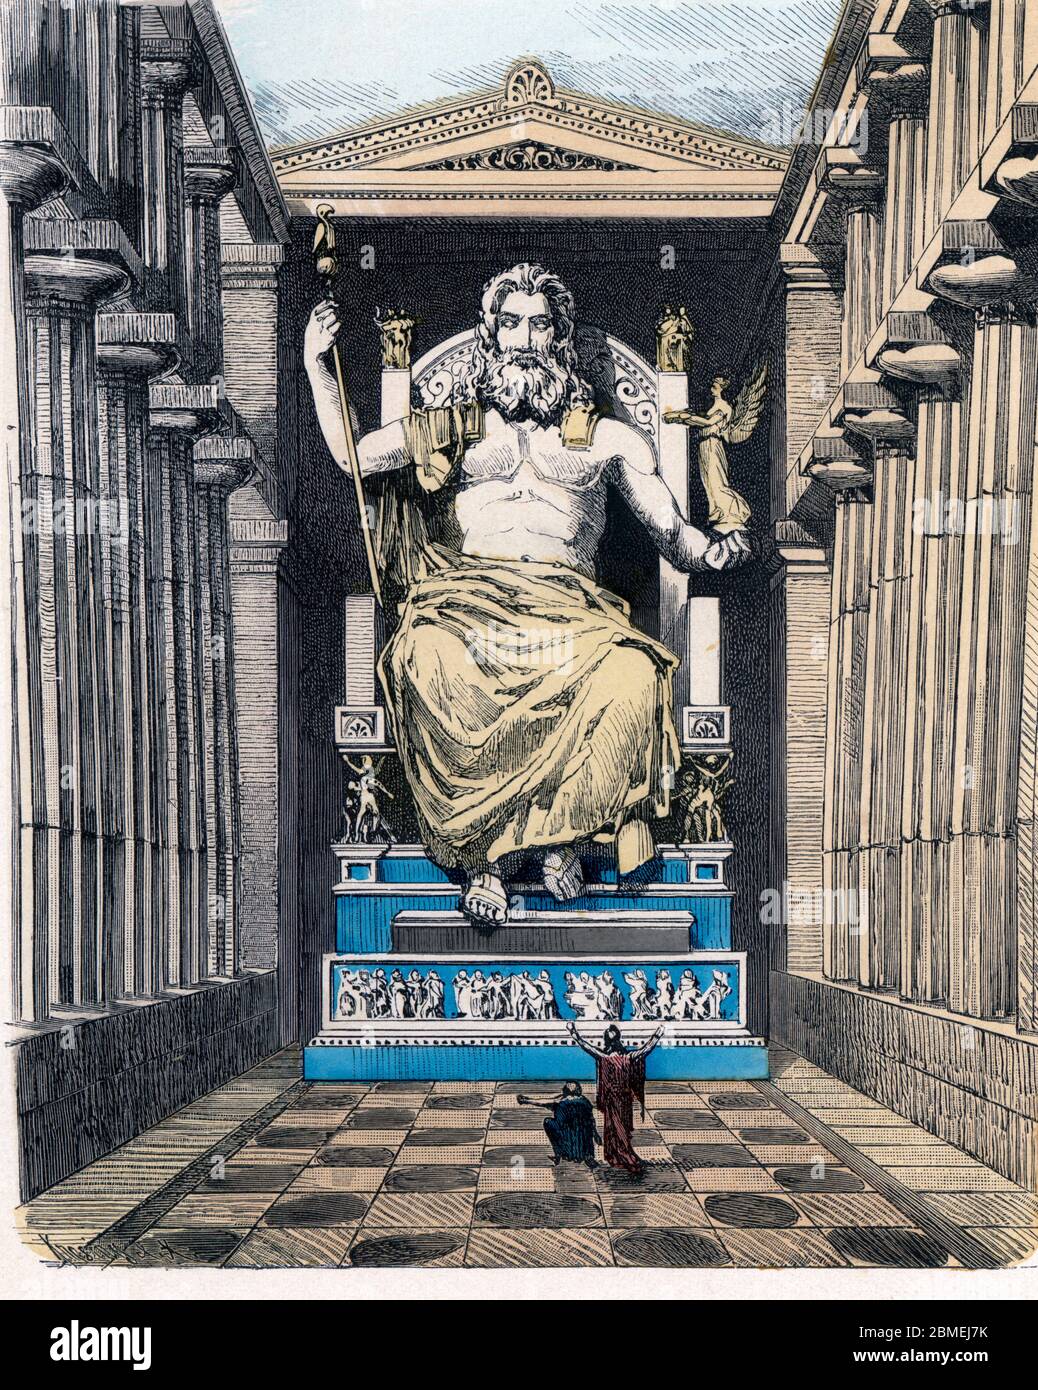 Historia Antigua. Las siete maravillas del mundo antiguo. Estatua y templo de Zeus (Júpiter). Grabado alemán de 1886. Stock Photo